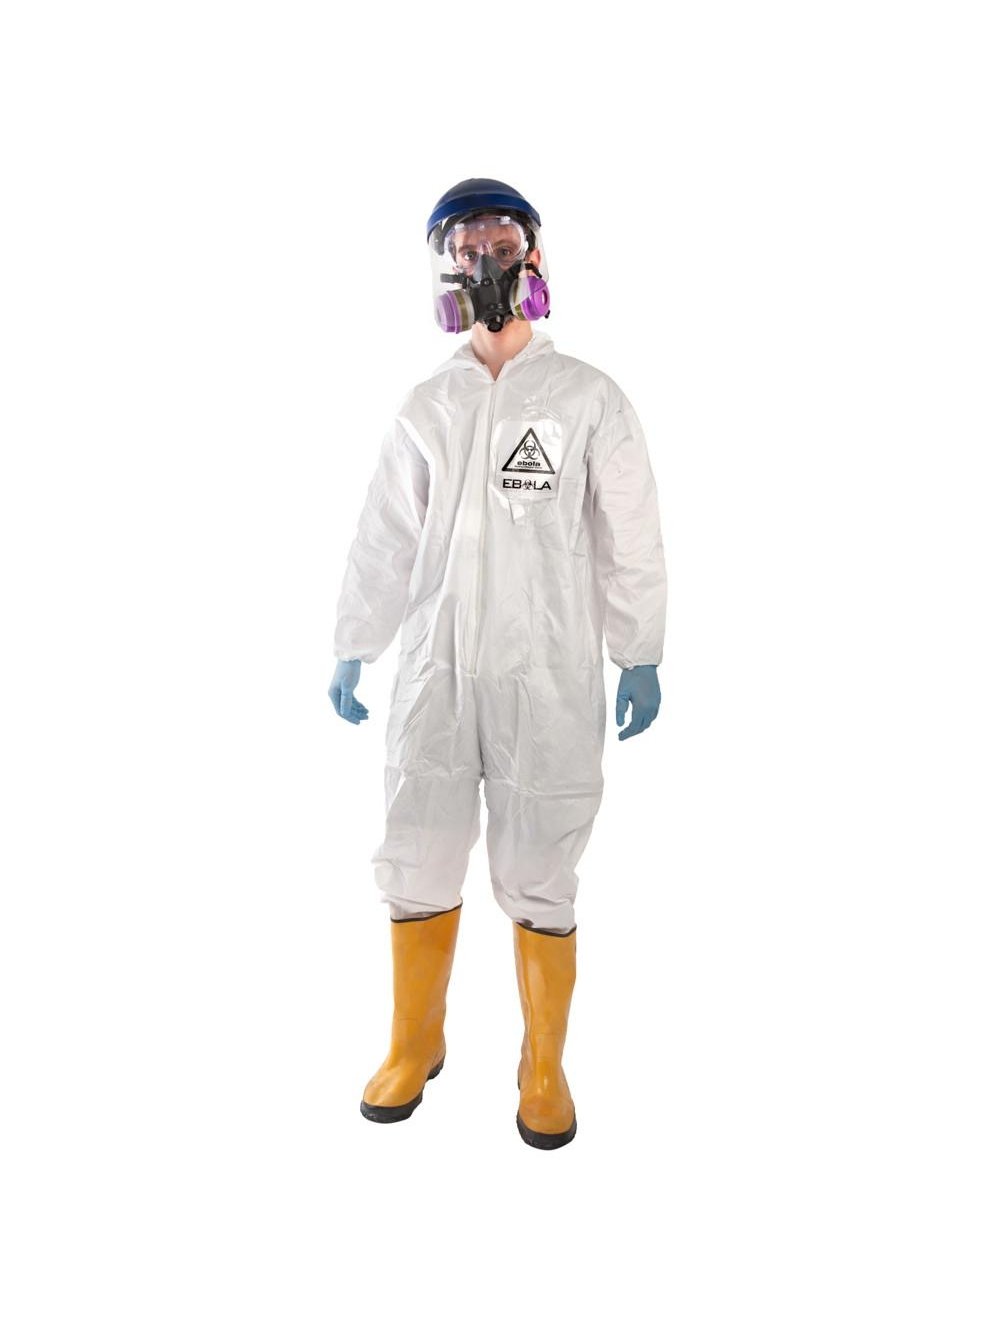 Ebola Containment Suit Costume-COSTUMEISH